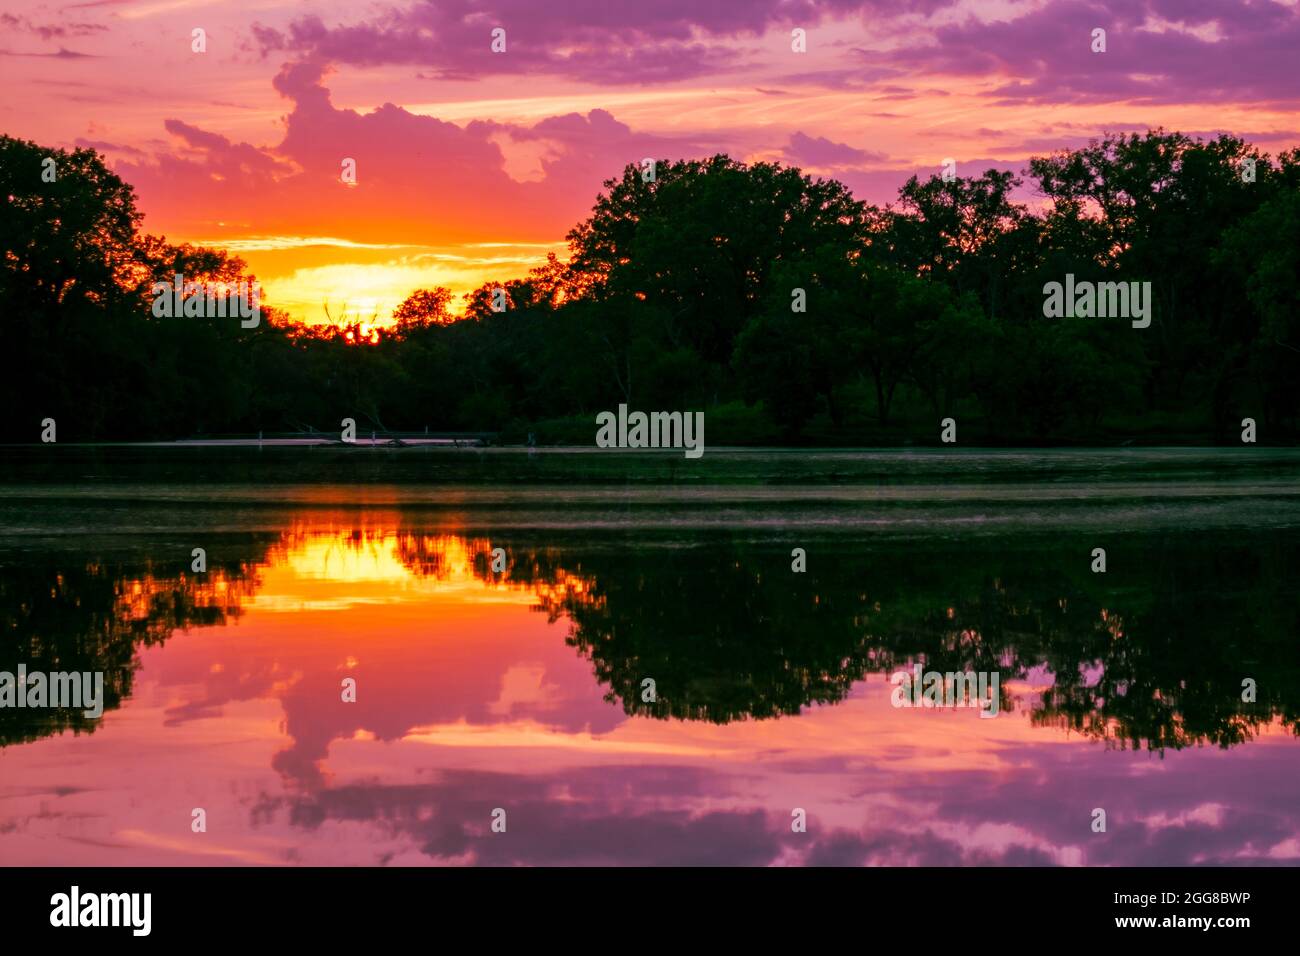 Aufnahme einer Lagune bei Sonnenuntergang, die die Bäume und den Himmel im Wasser spiegelt. Stockfoto